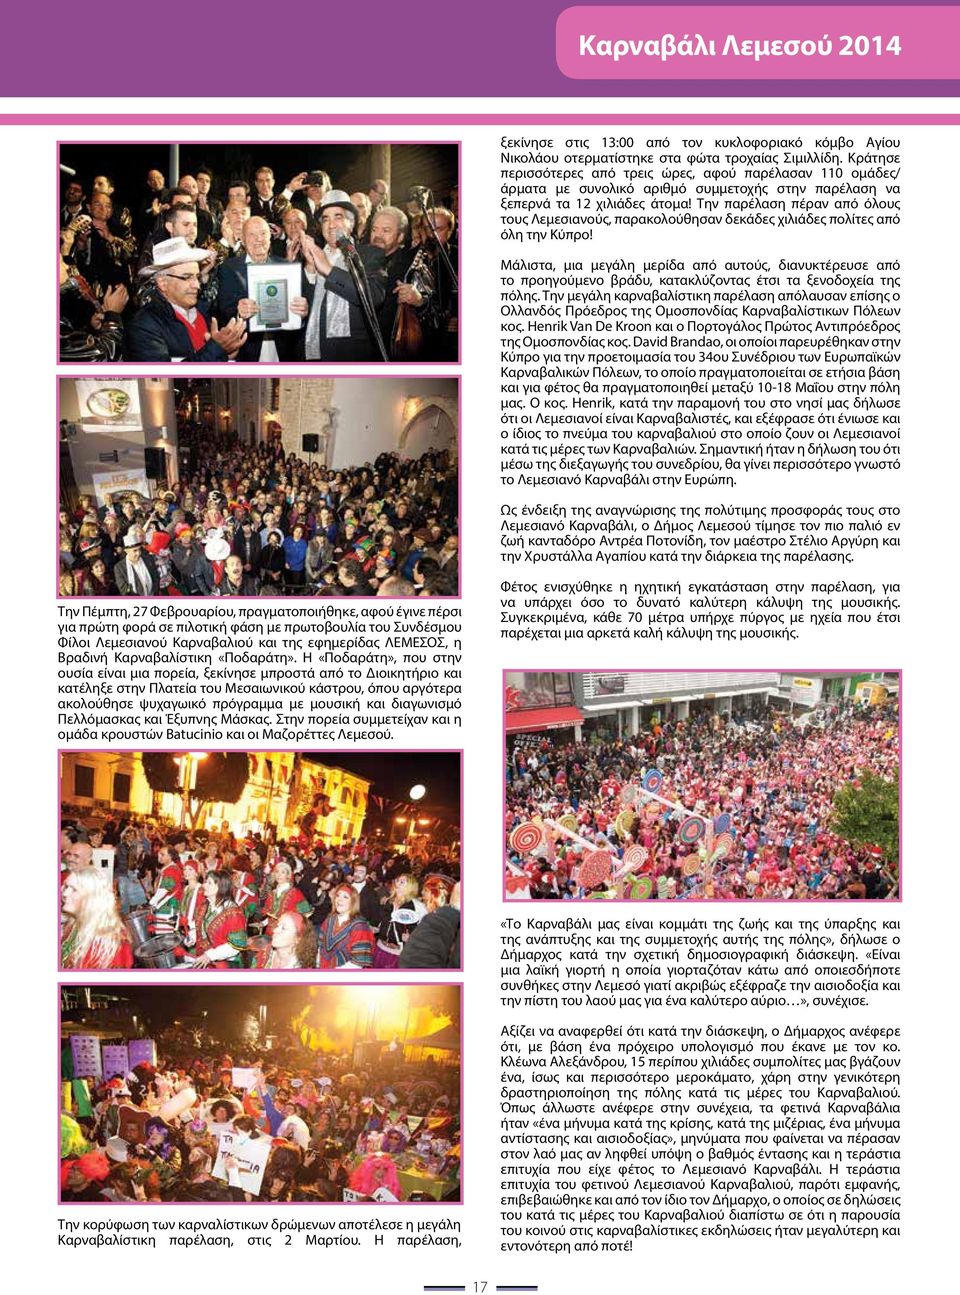 Την παρέλαση πέραν από όλους τους Λεμεσιανούς, παρακολούθησαν δεκάδες χιλιάδες πολίτες από όλη την Κύπρο!